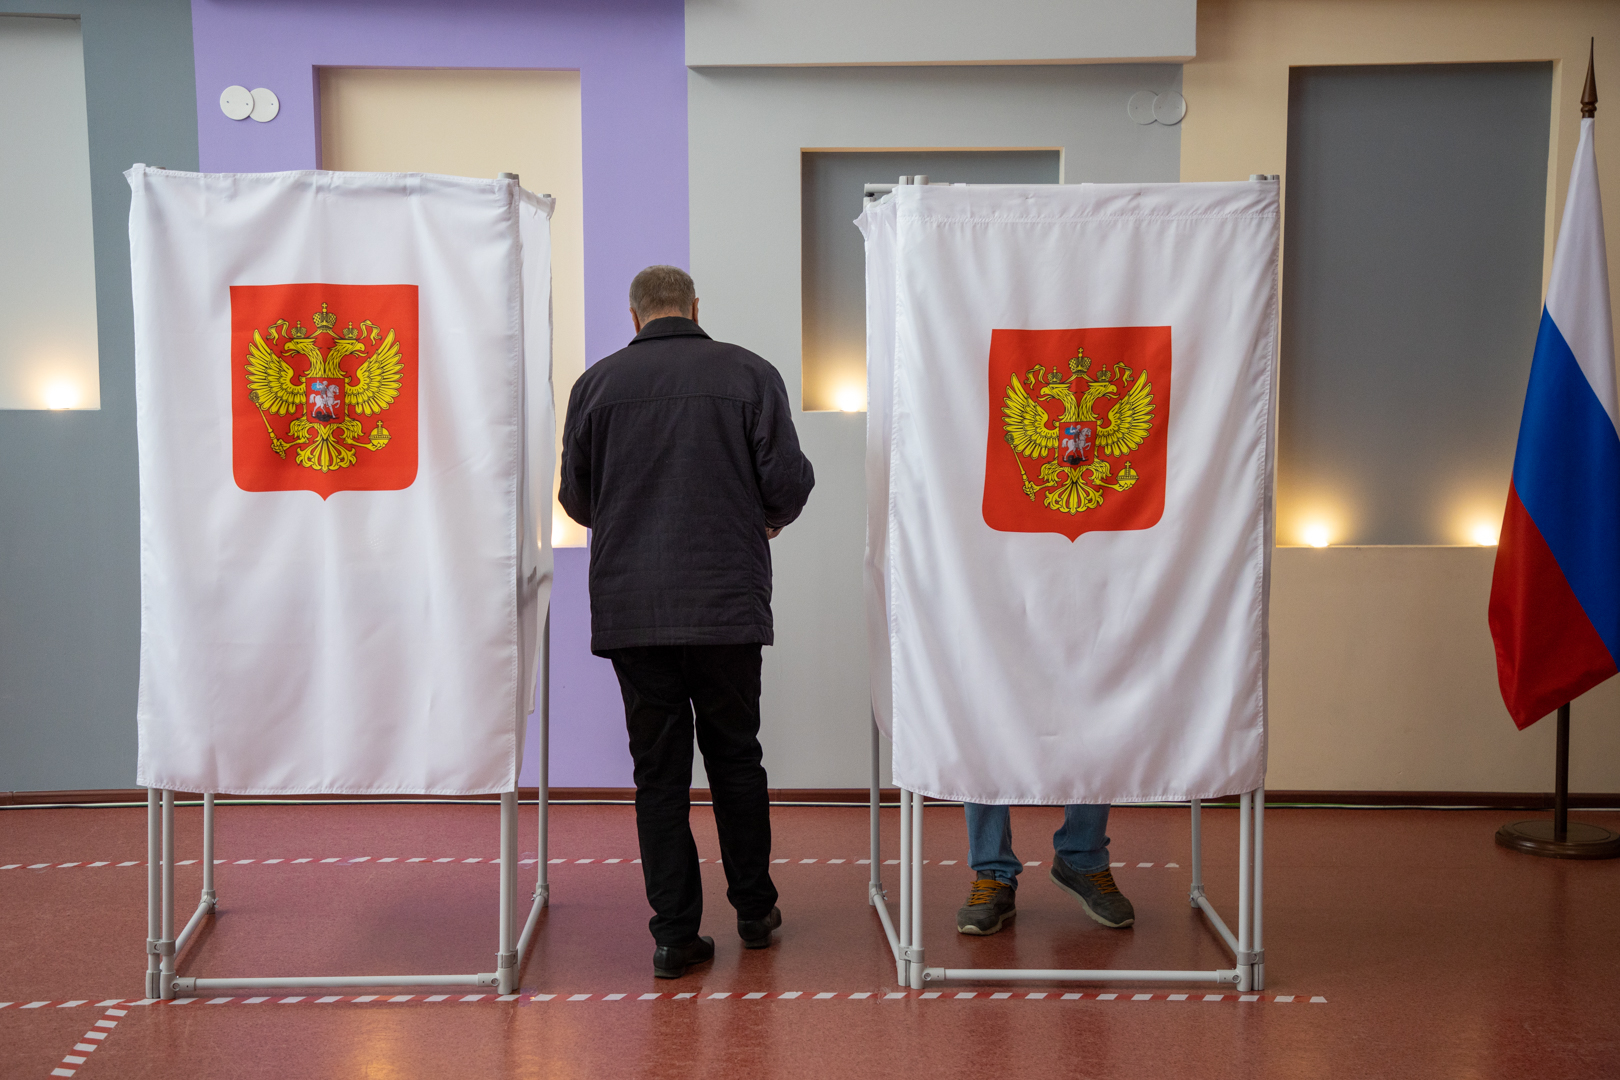 На 561 избирательном участке в Тульской области организуют видеонаблюдение